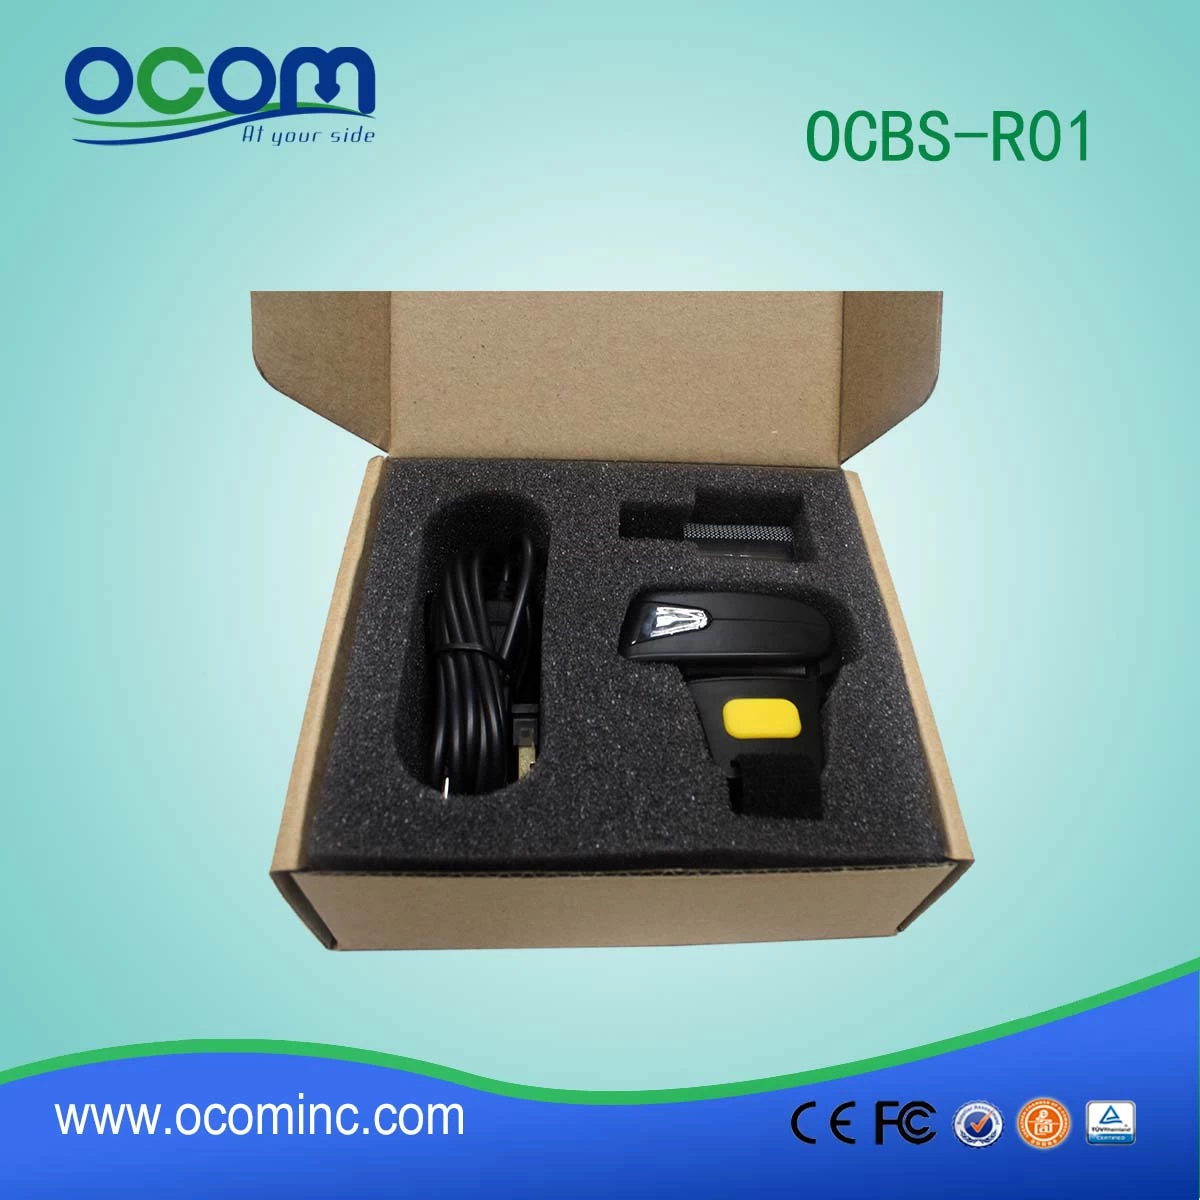 OCBS-R01 1d pocket wireless bluetooth barcode reader